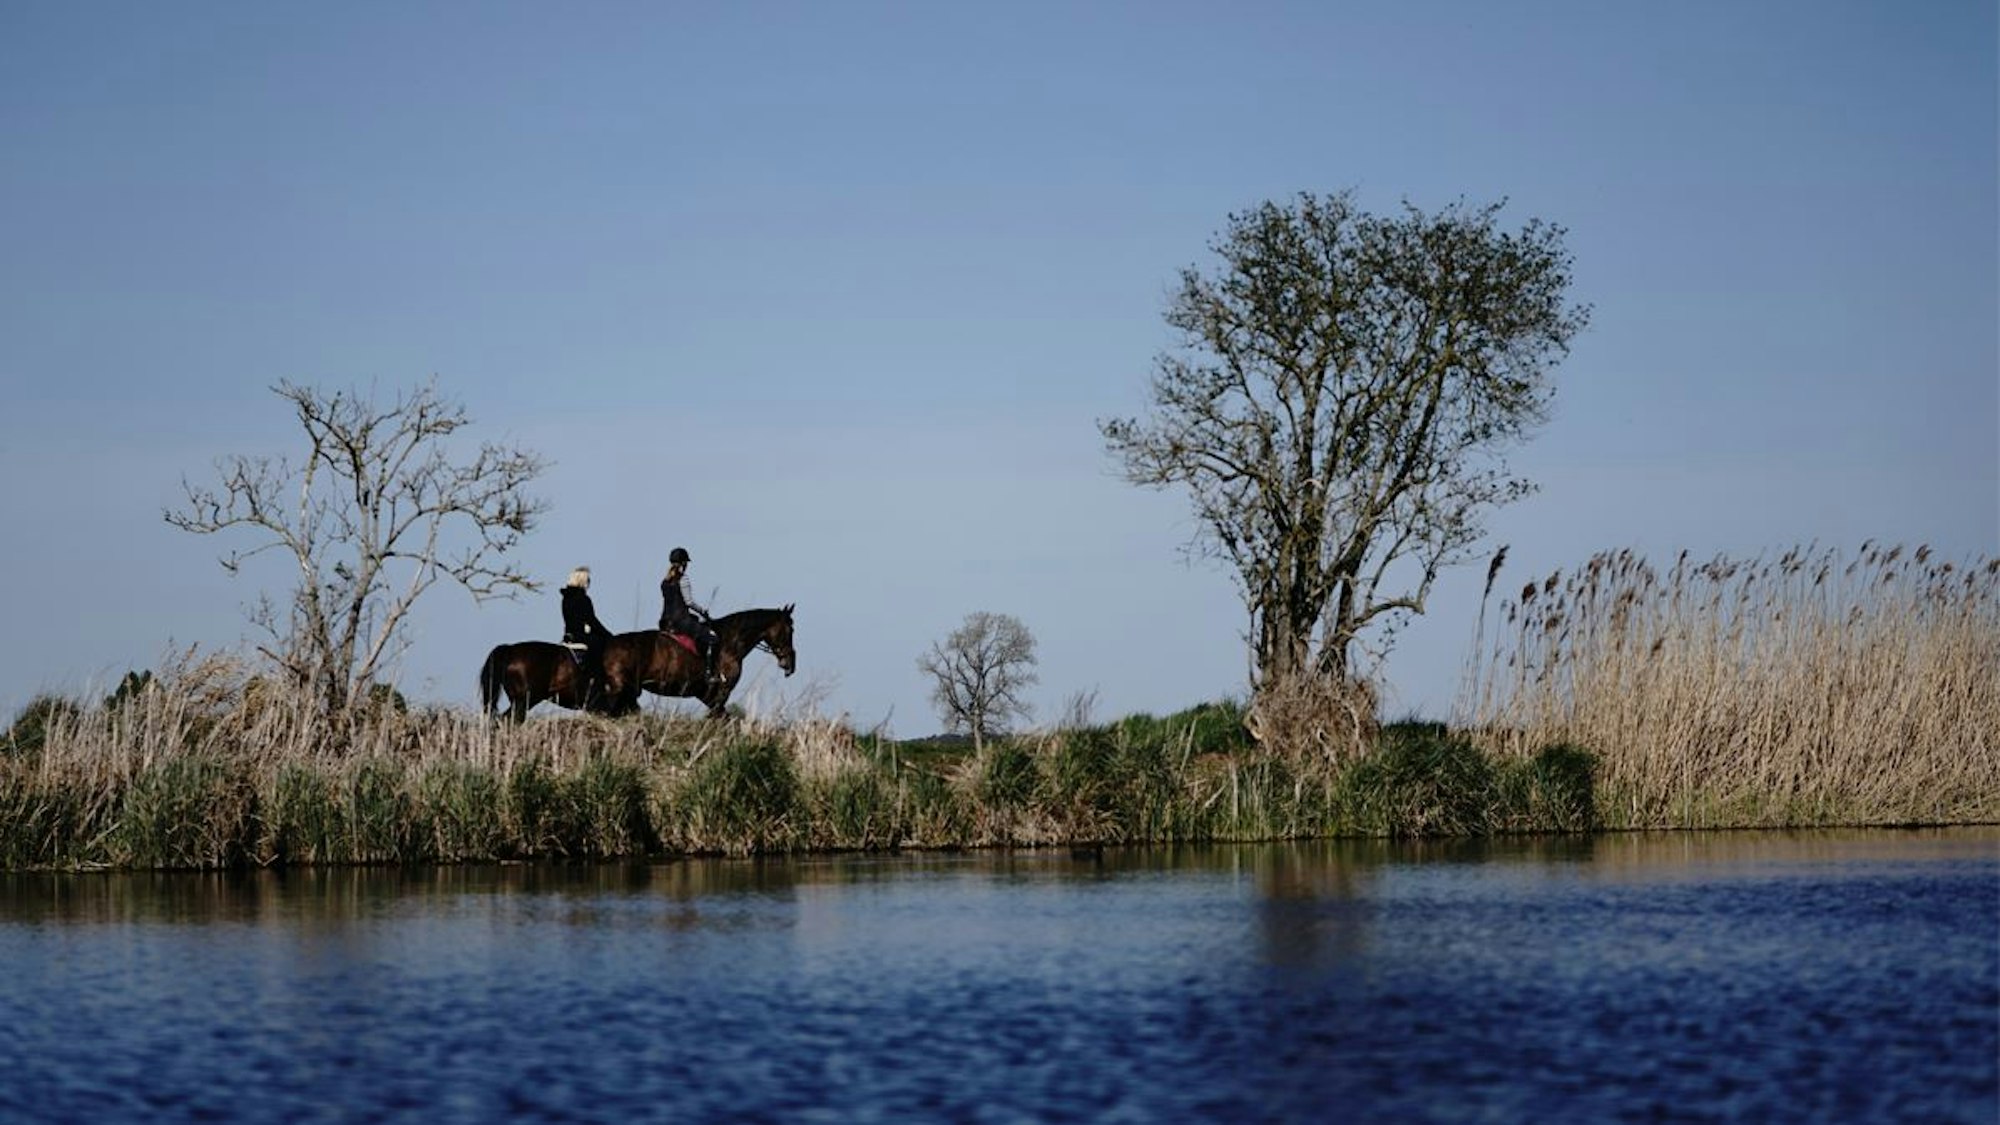 Im Sonnenschein passieren zwei Reiterinnen auf ihren Pferden einen See am Schulzendorfer Graben.